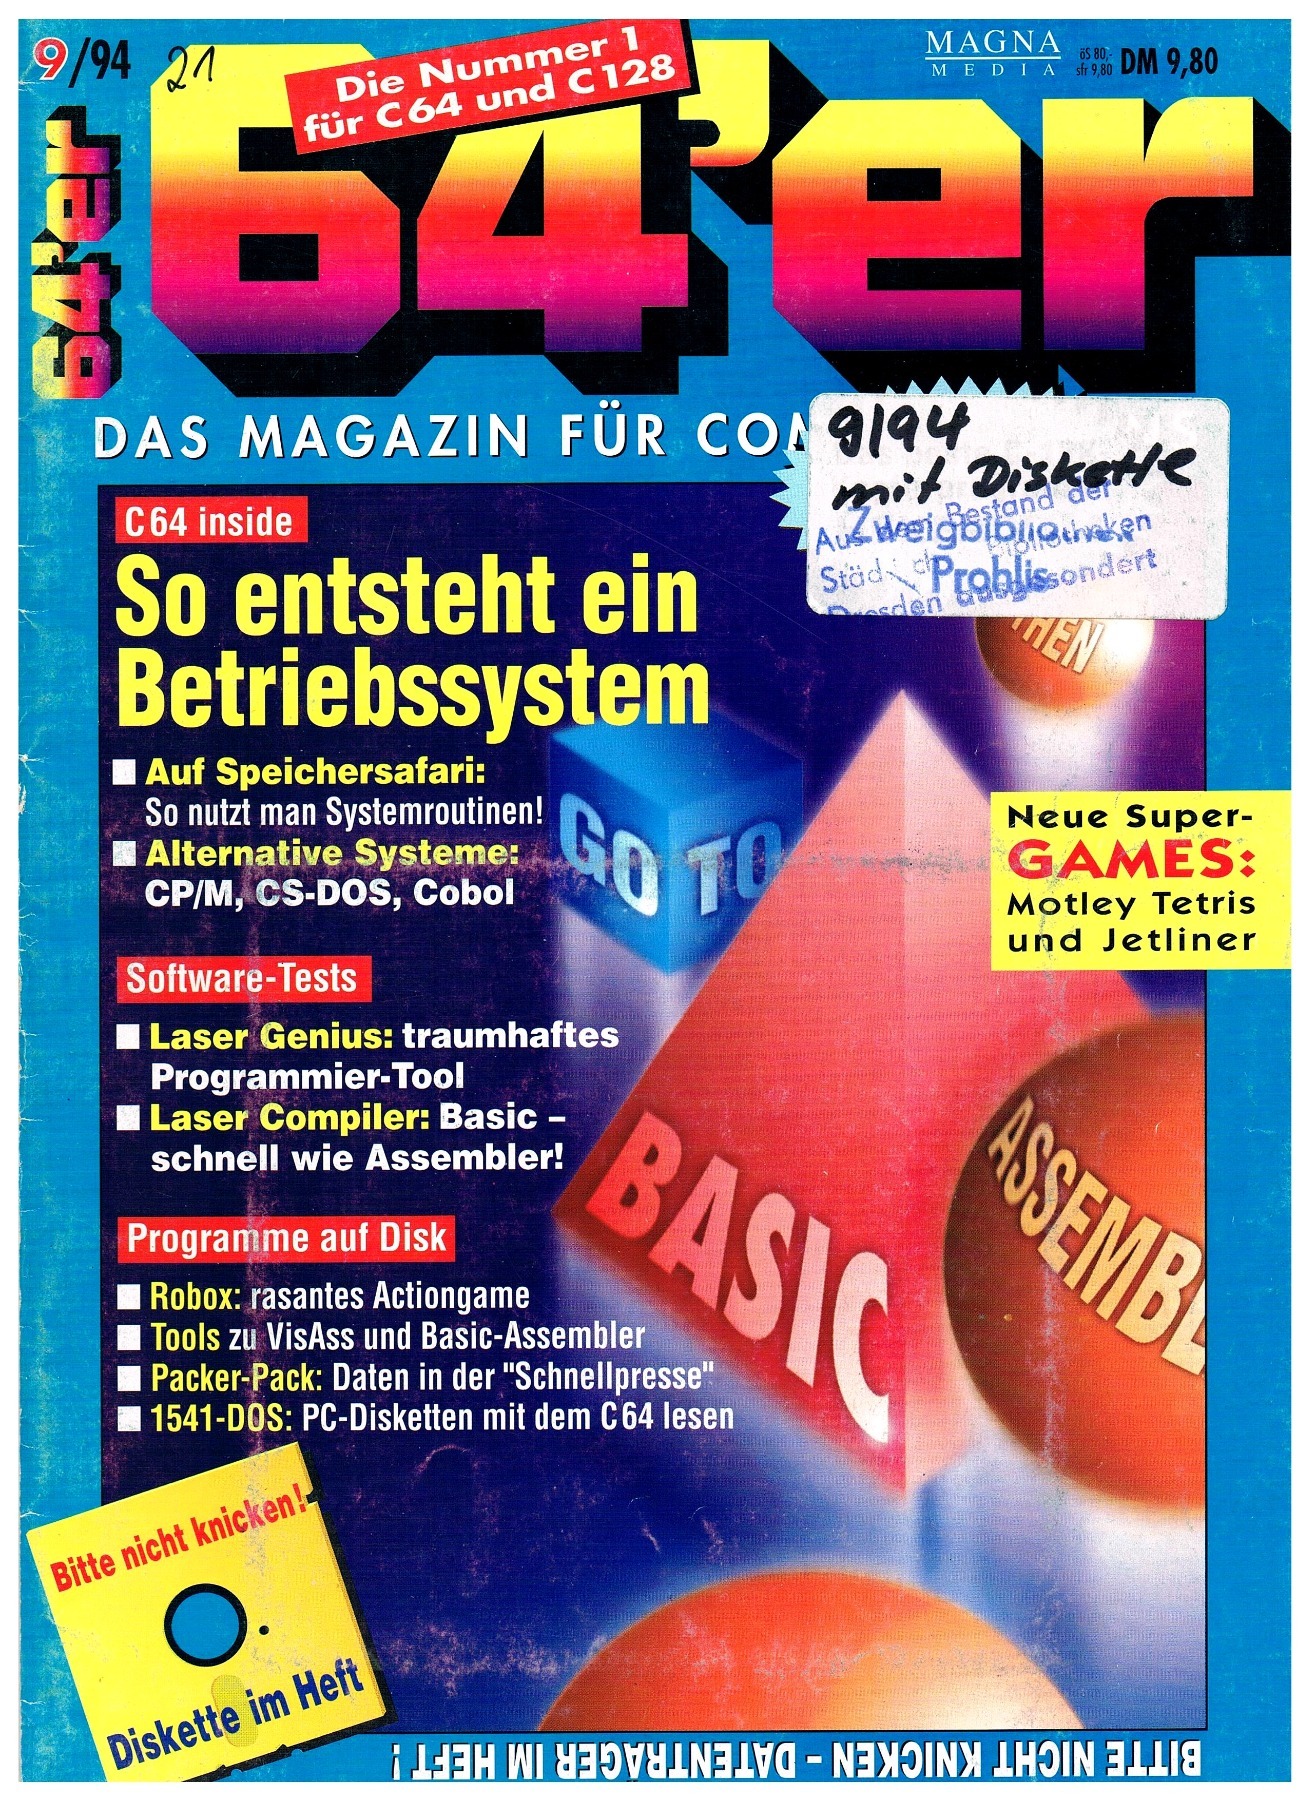 64er Magazin - Ausgabe 9/94 1994